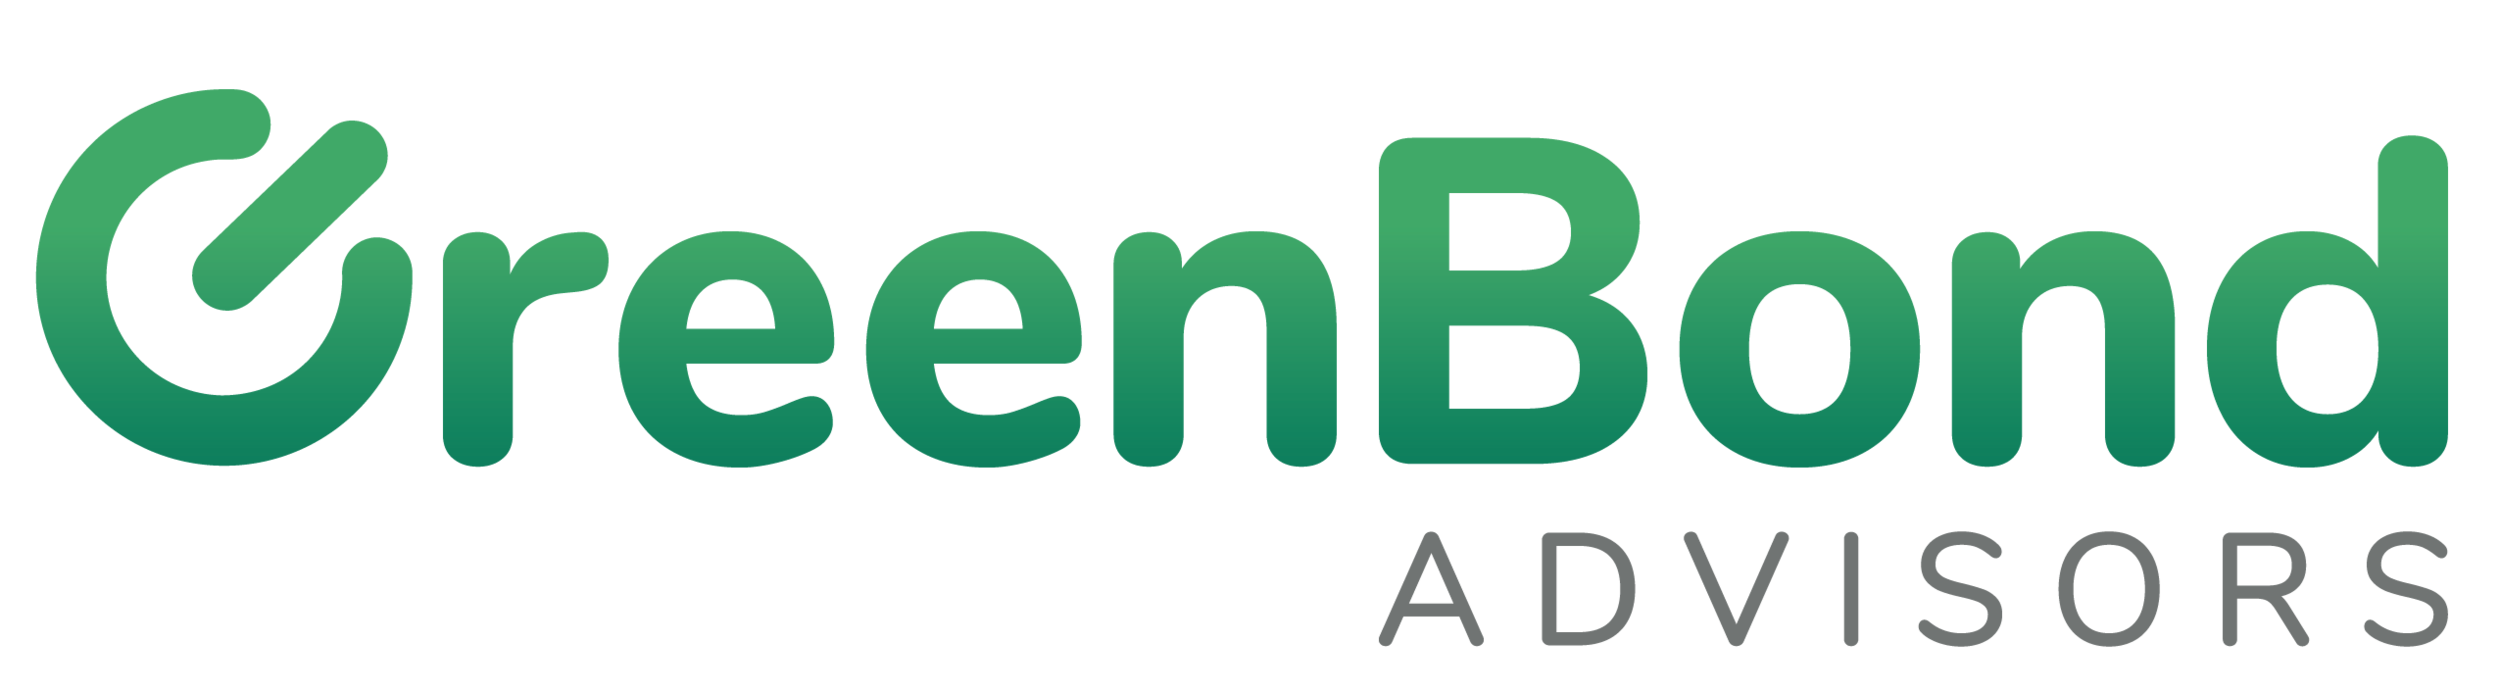 GreenCurrent - June 27, 2020 — GreenBond Advisors